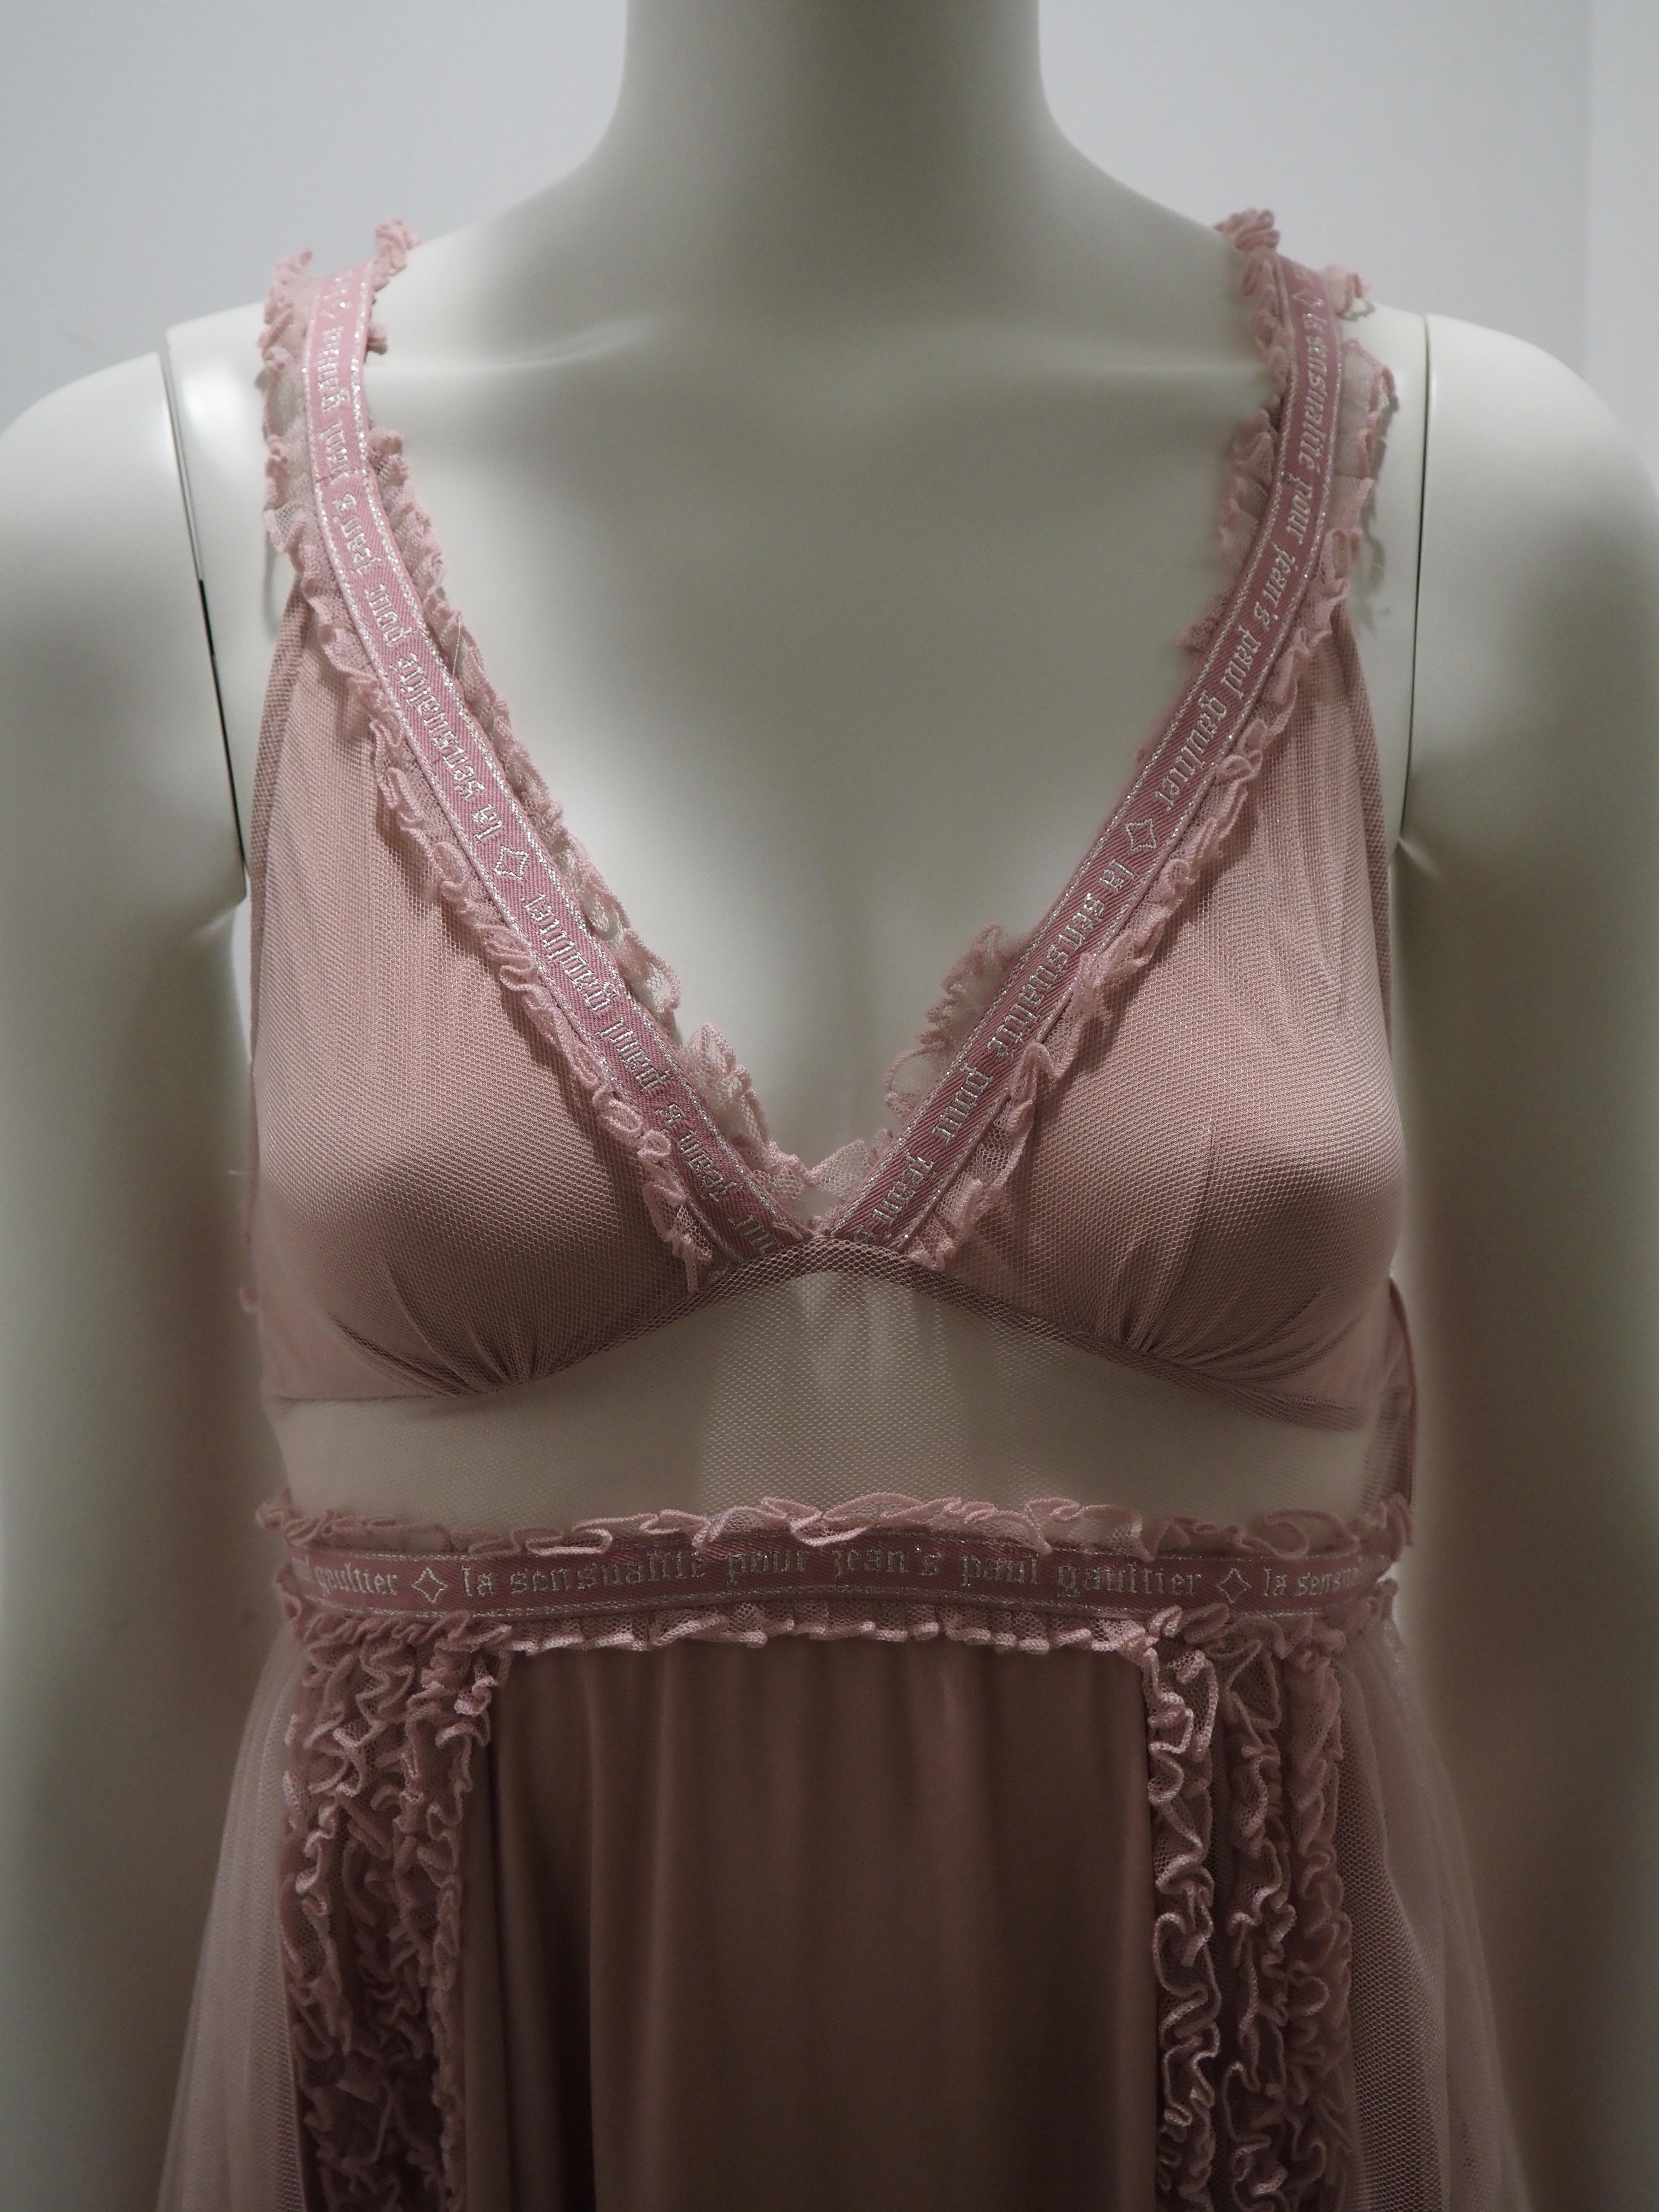 Jean Paul Gaultier pink dress
size 38